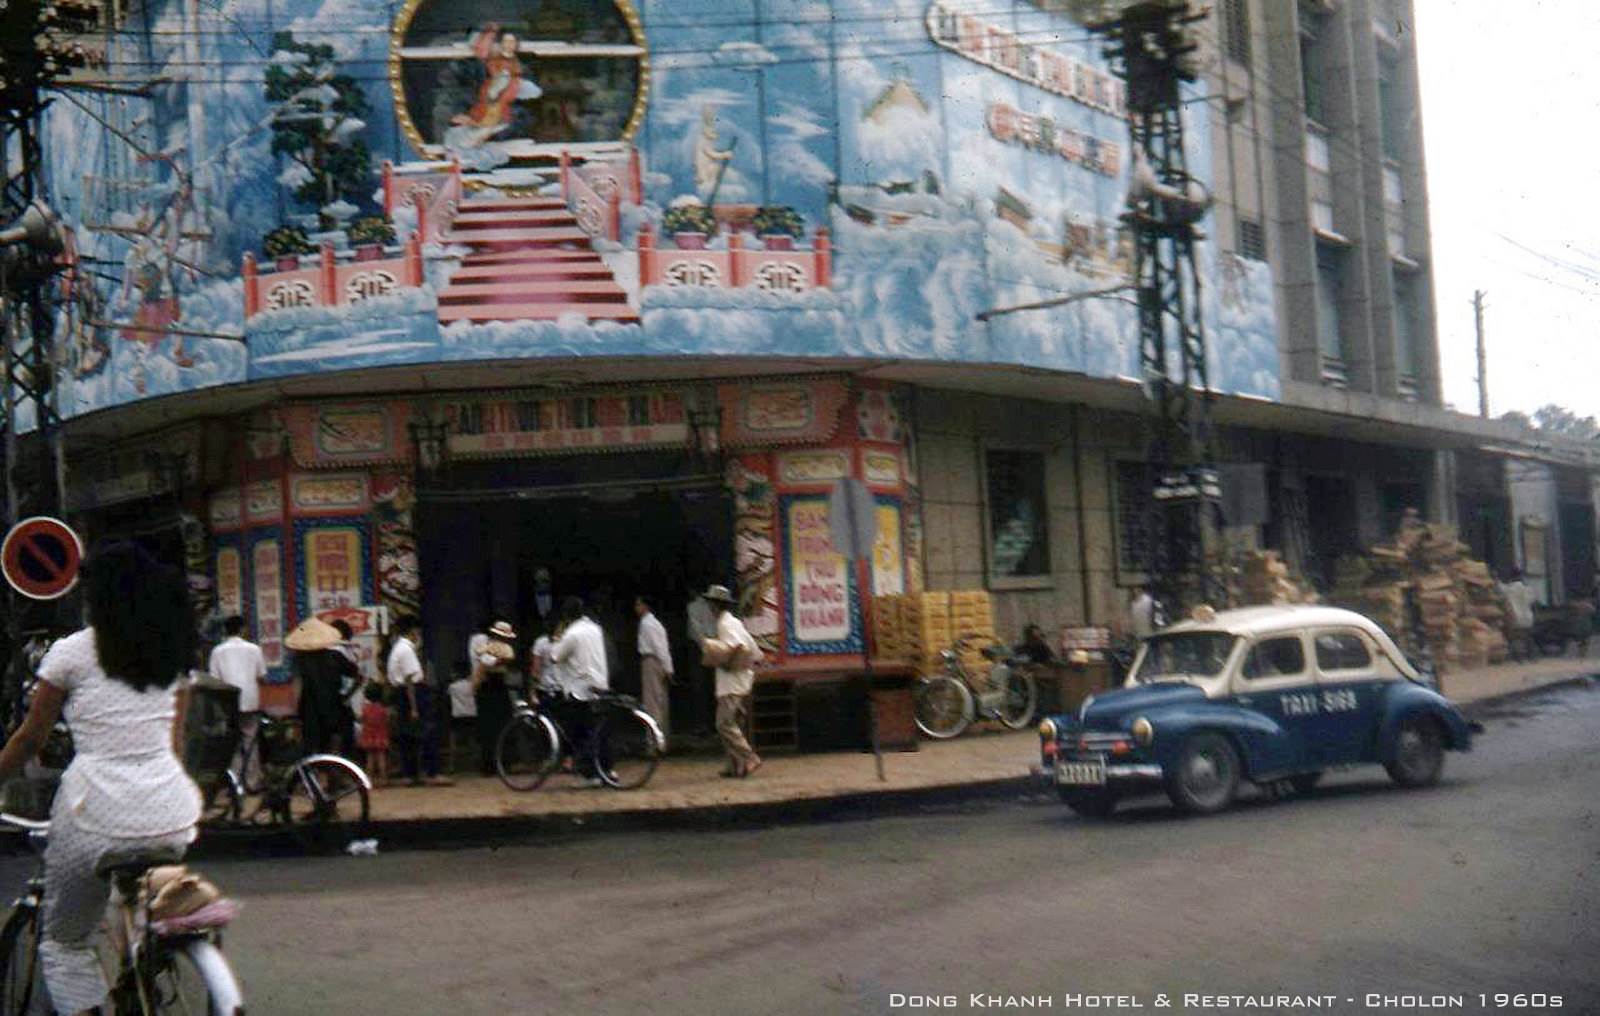 CHOLON 1960 - Nhà hàng Đồng Khánh, góc Đồng Khánh-An Bình - Bánh Trung thu Đồng Khánh